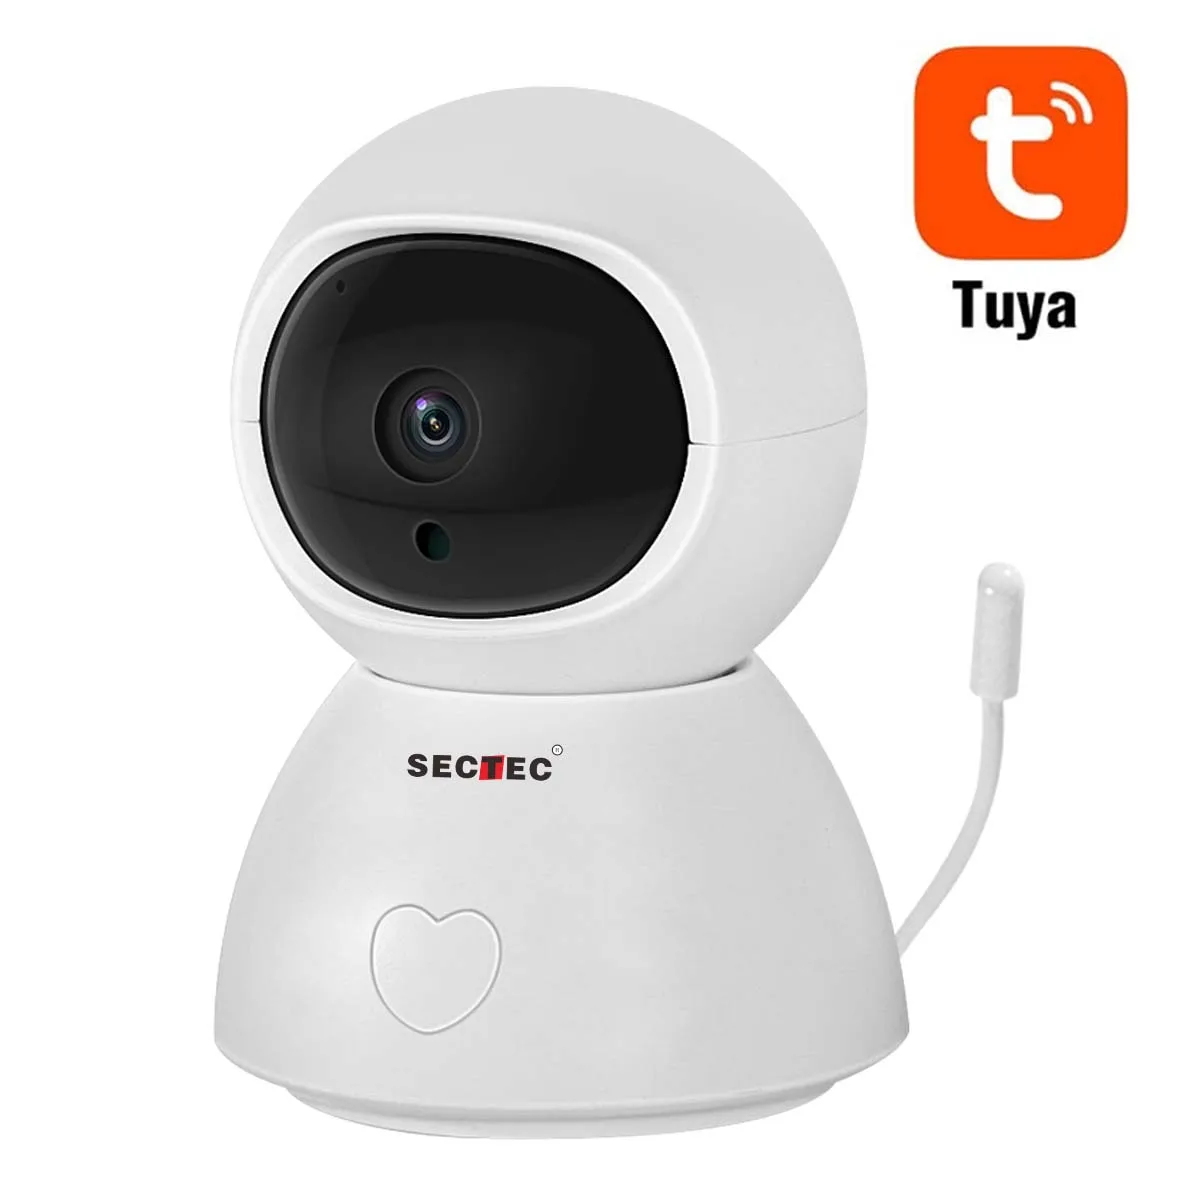 
Sectec HD 1080P умный дом Безопасность аудио Радионяня Wifi IP камера беспроводная CCTV видеонаблюдение Видео Радио  (62120513333)